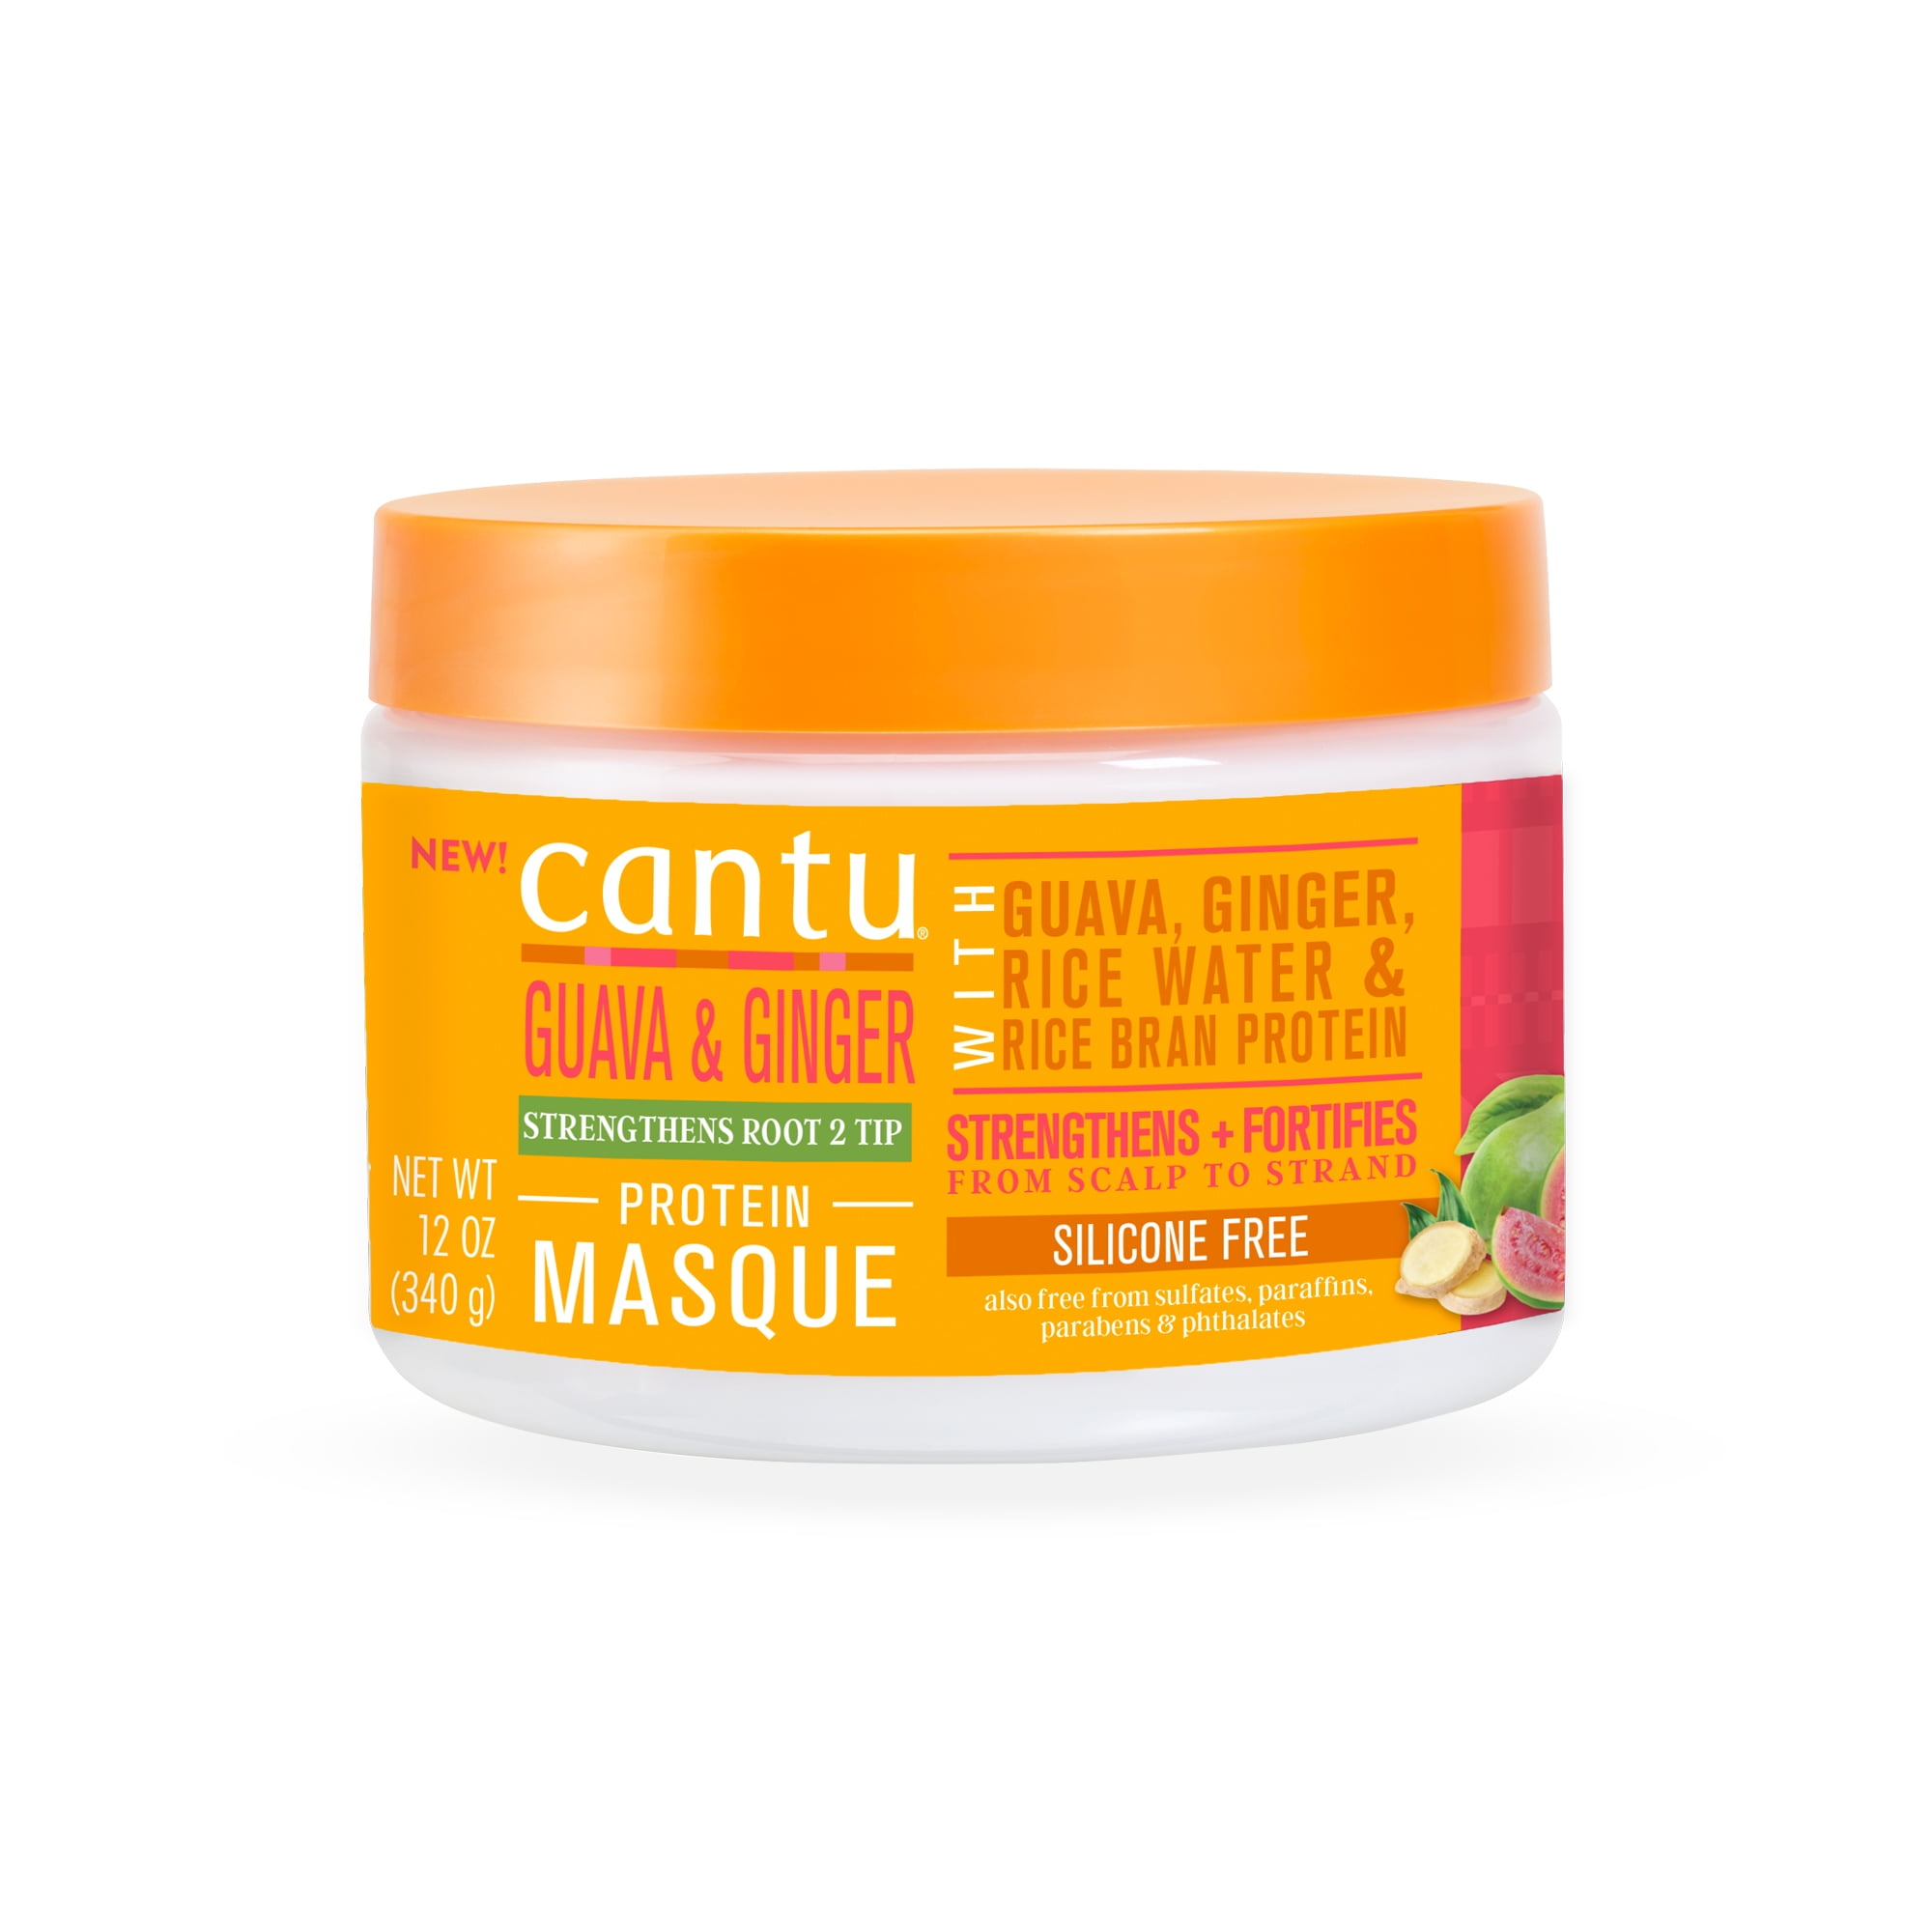 Cantu Hair Masque Guava, Ginger & Rice Bran Protein, 12 oz - Walmart.com